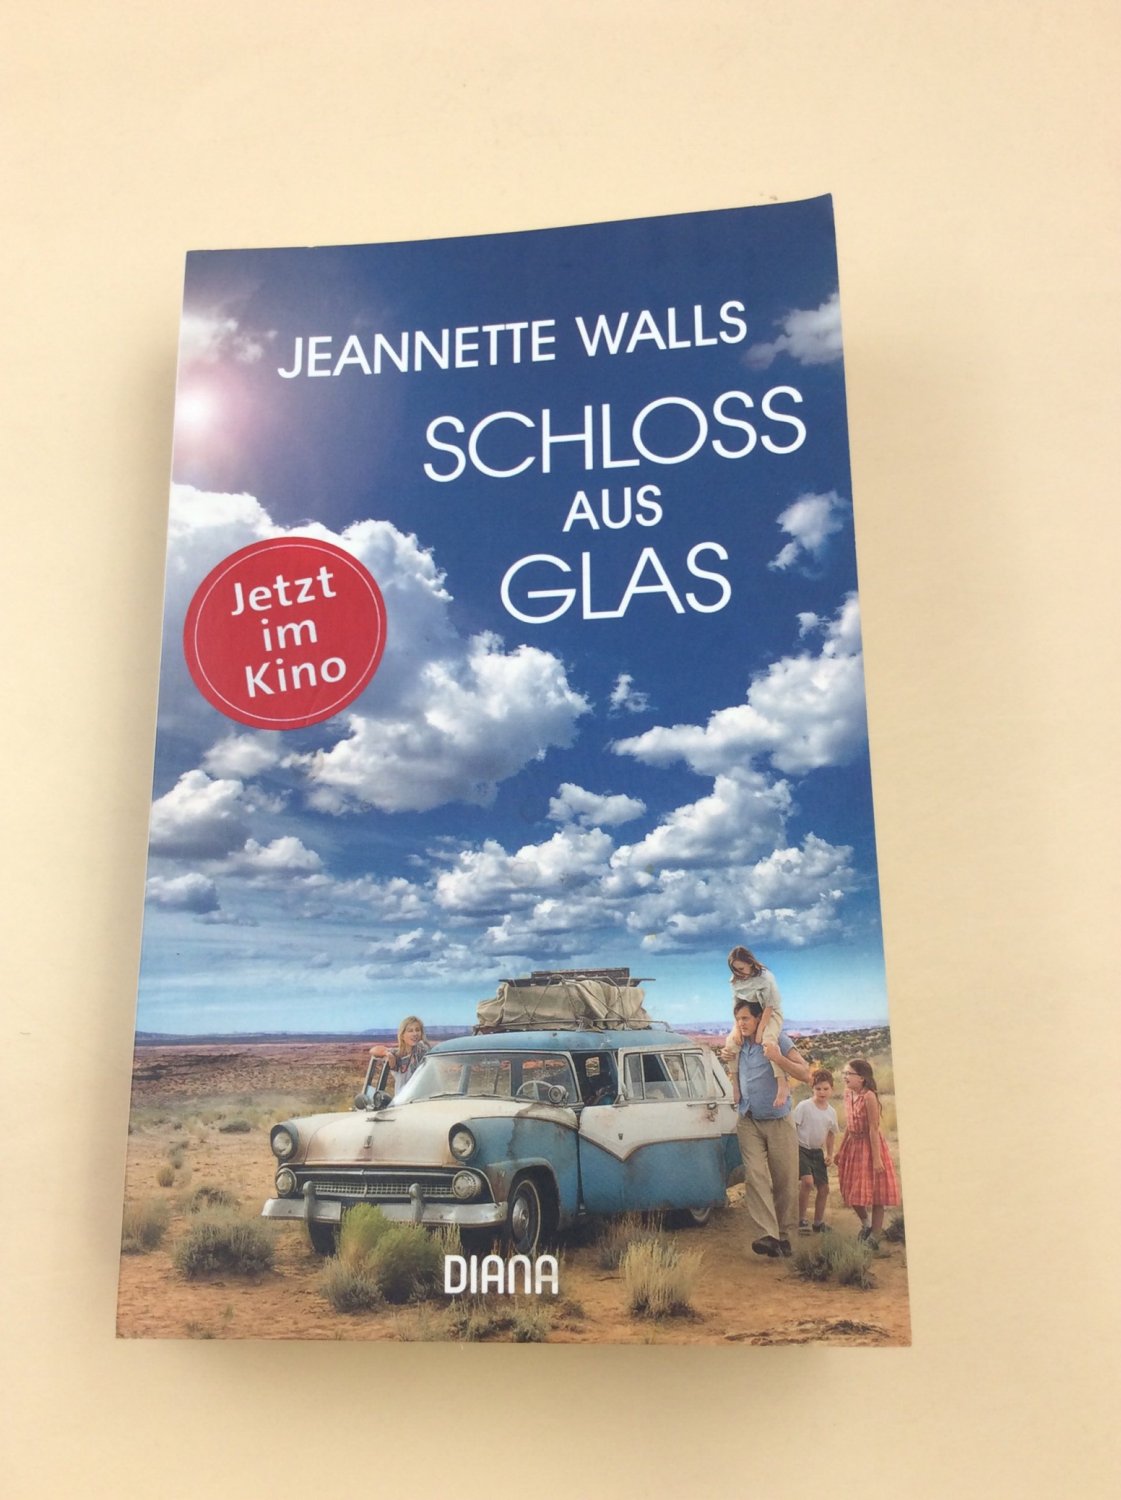 Schloss aus Glas “ (Jeannette Walls) – Buch gebraucht kaufen – A02v5AyL01ZZK